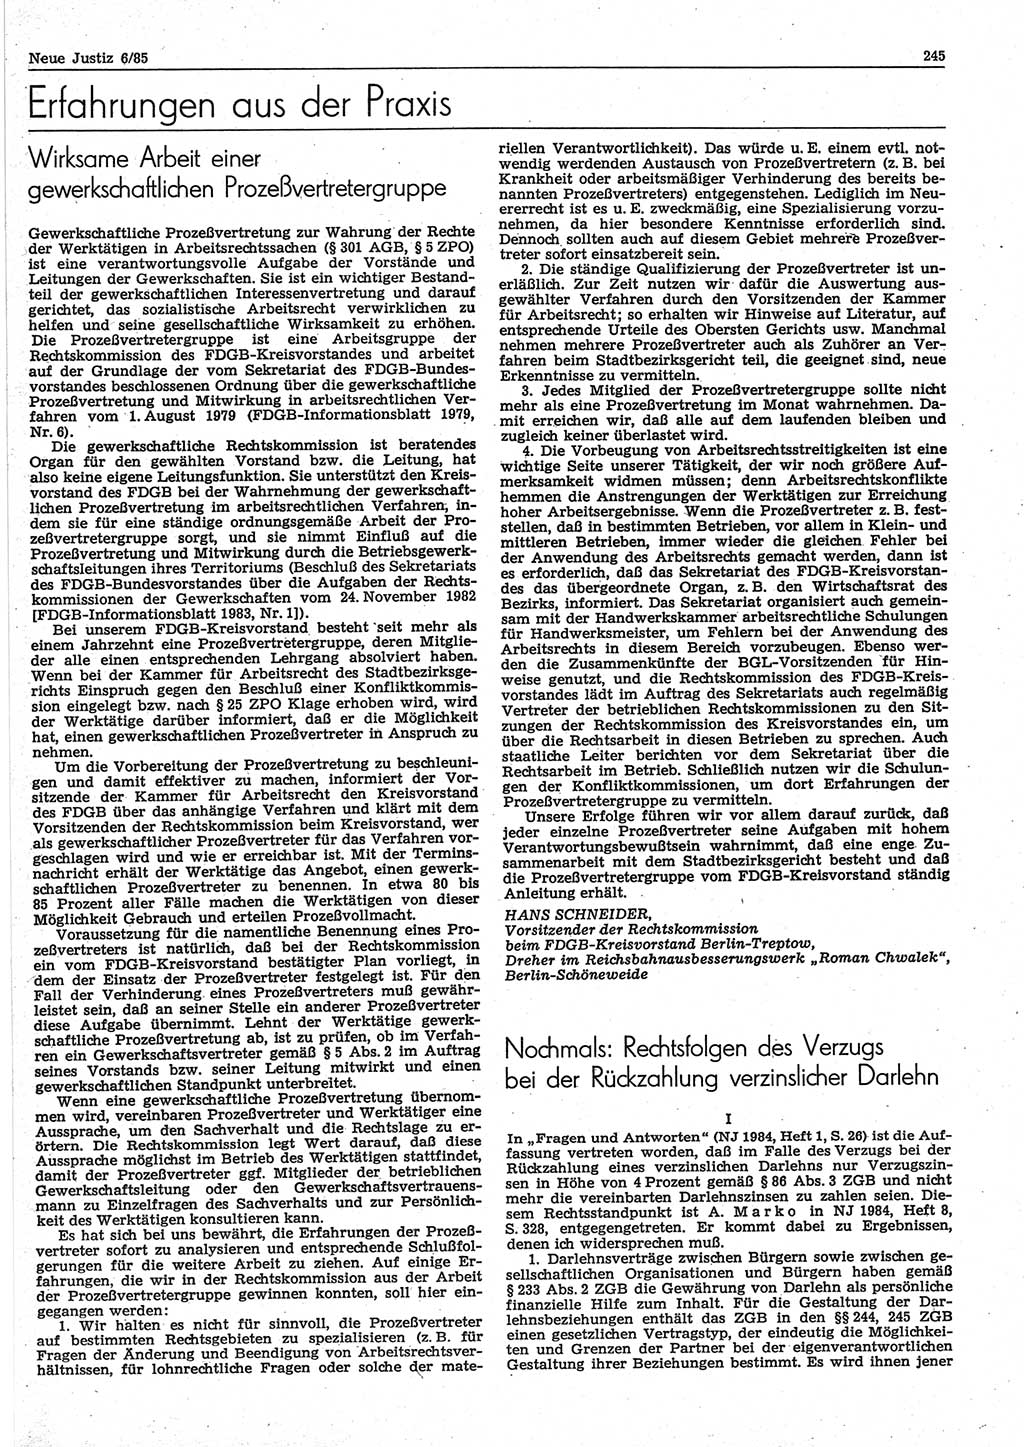 Neue Justiz (NJ), Zeitschrift für sozialistisches Recht und Gesetzlichkeit [Deutsche Demokratische Republik (DDR)], 39. Jahrgang 1985, Seite 245 (NJ DDR 1985, S. 245)